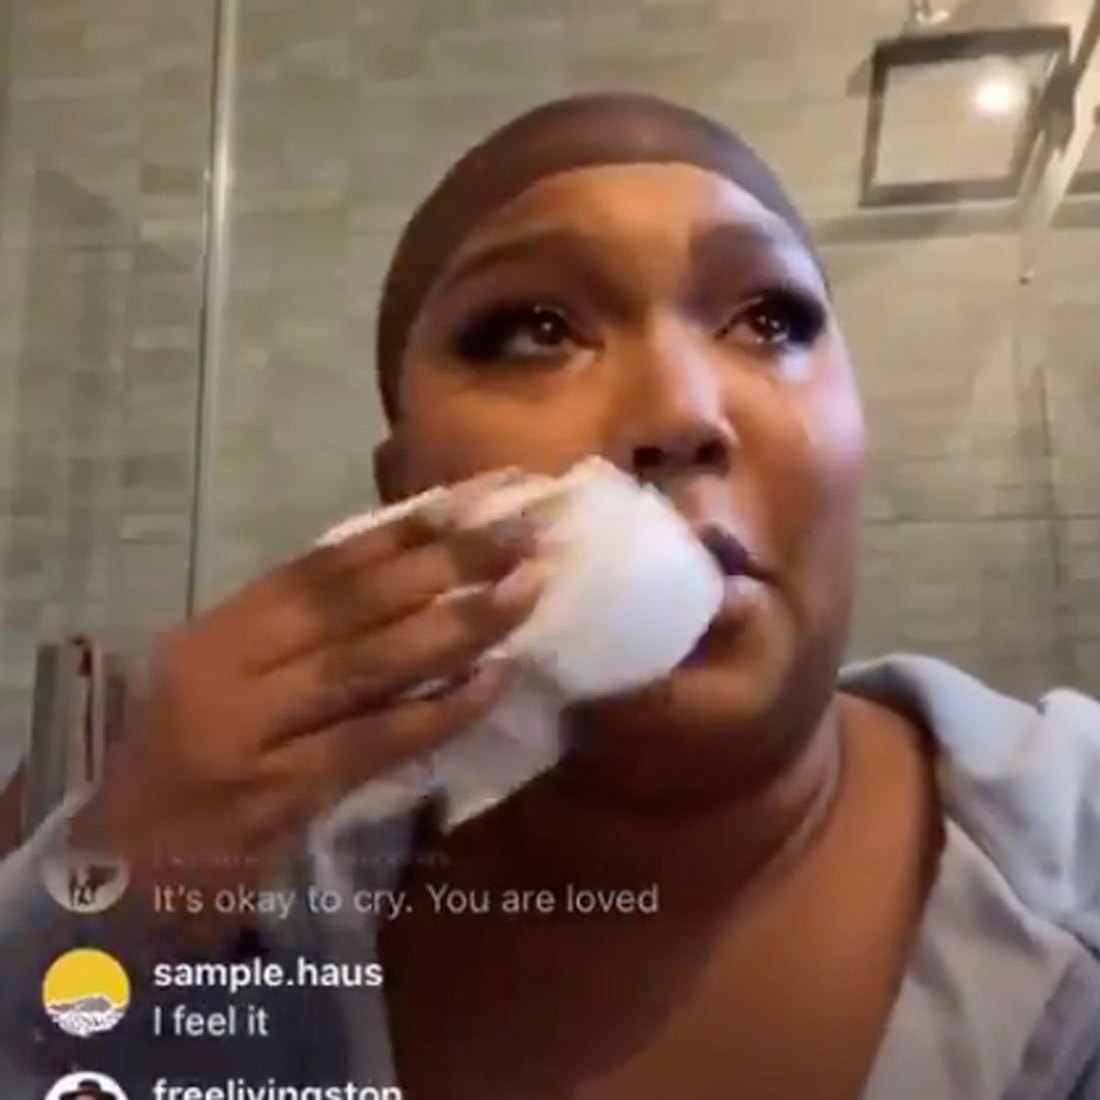 Rassismus & Bodyshaming: Instagram zieht Konsequenzen nach Drama im Live-Stream